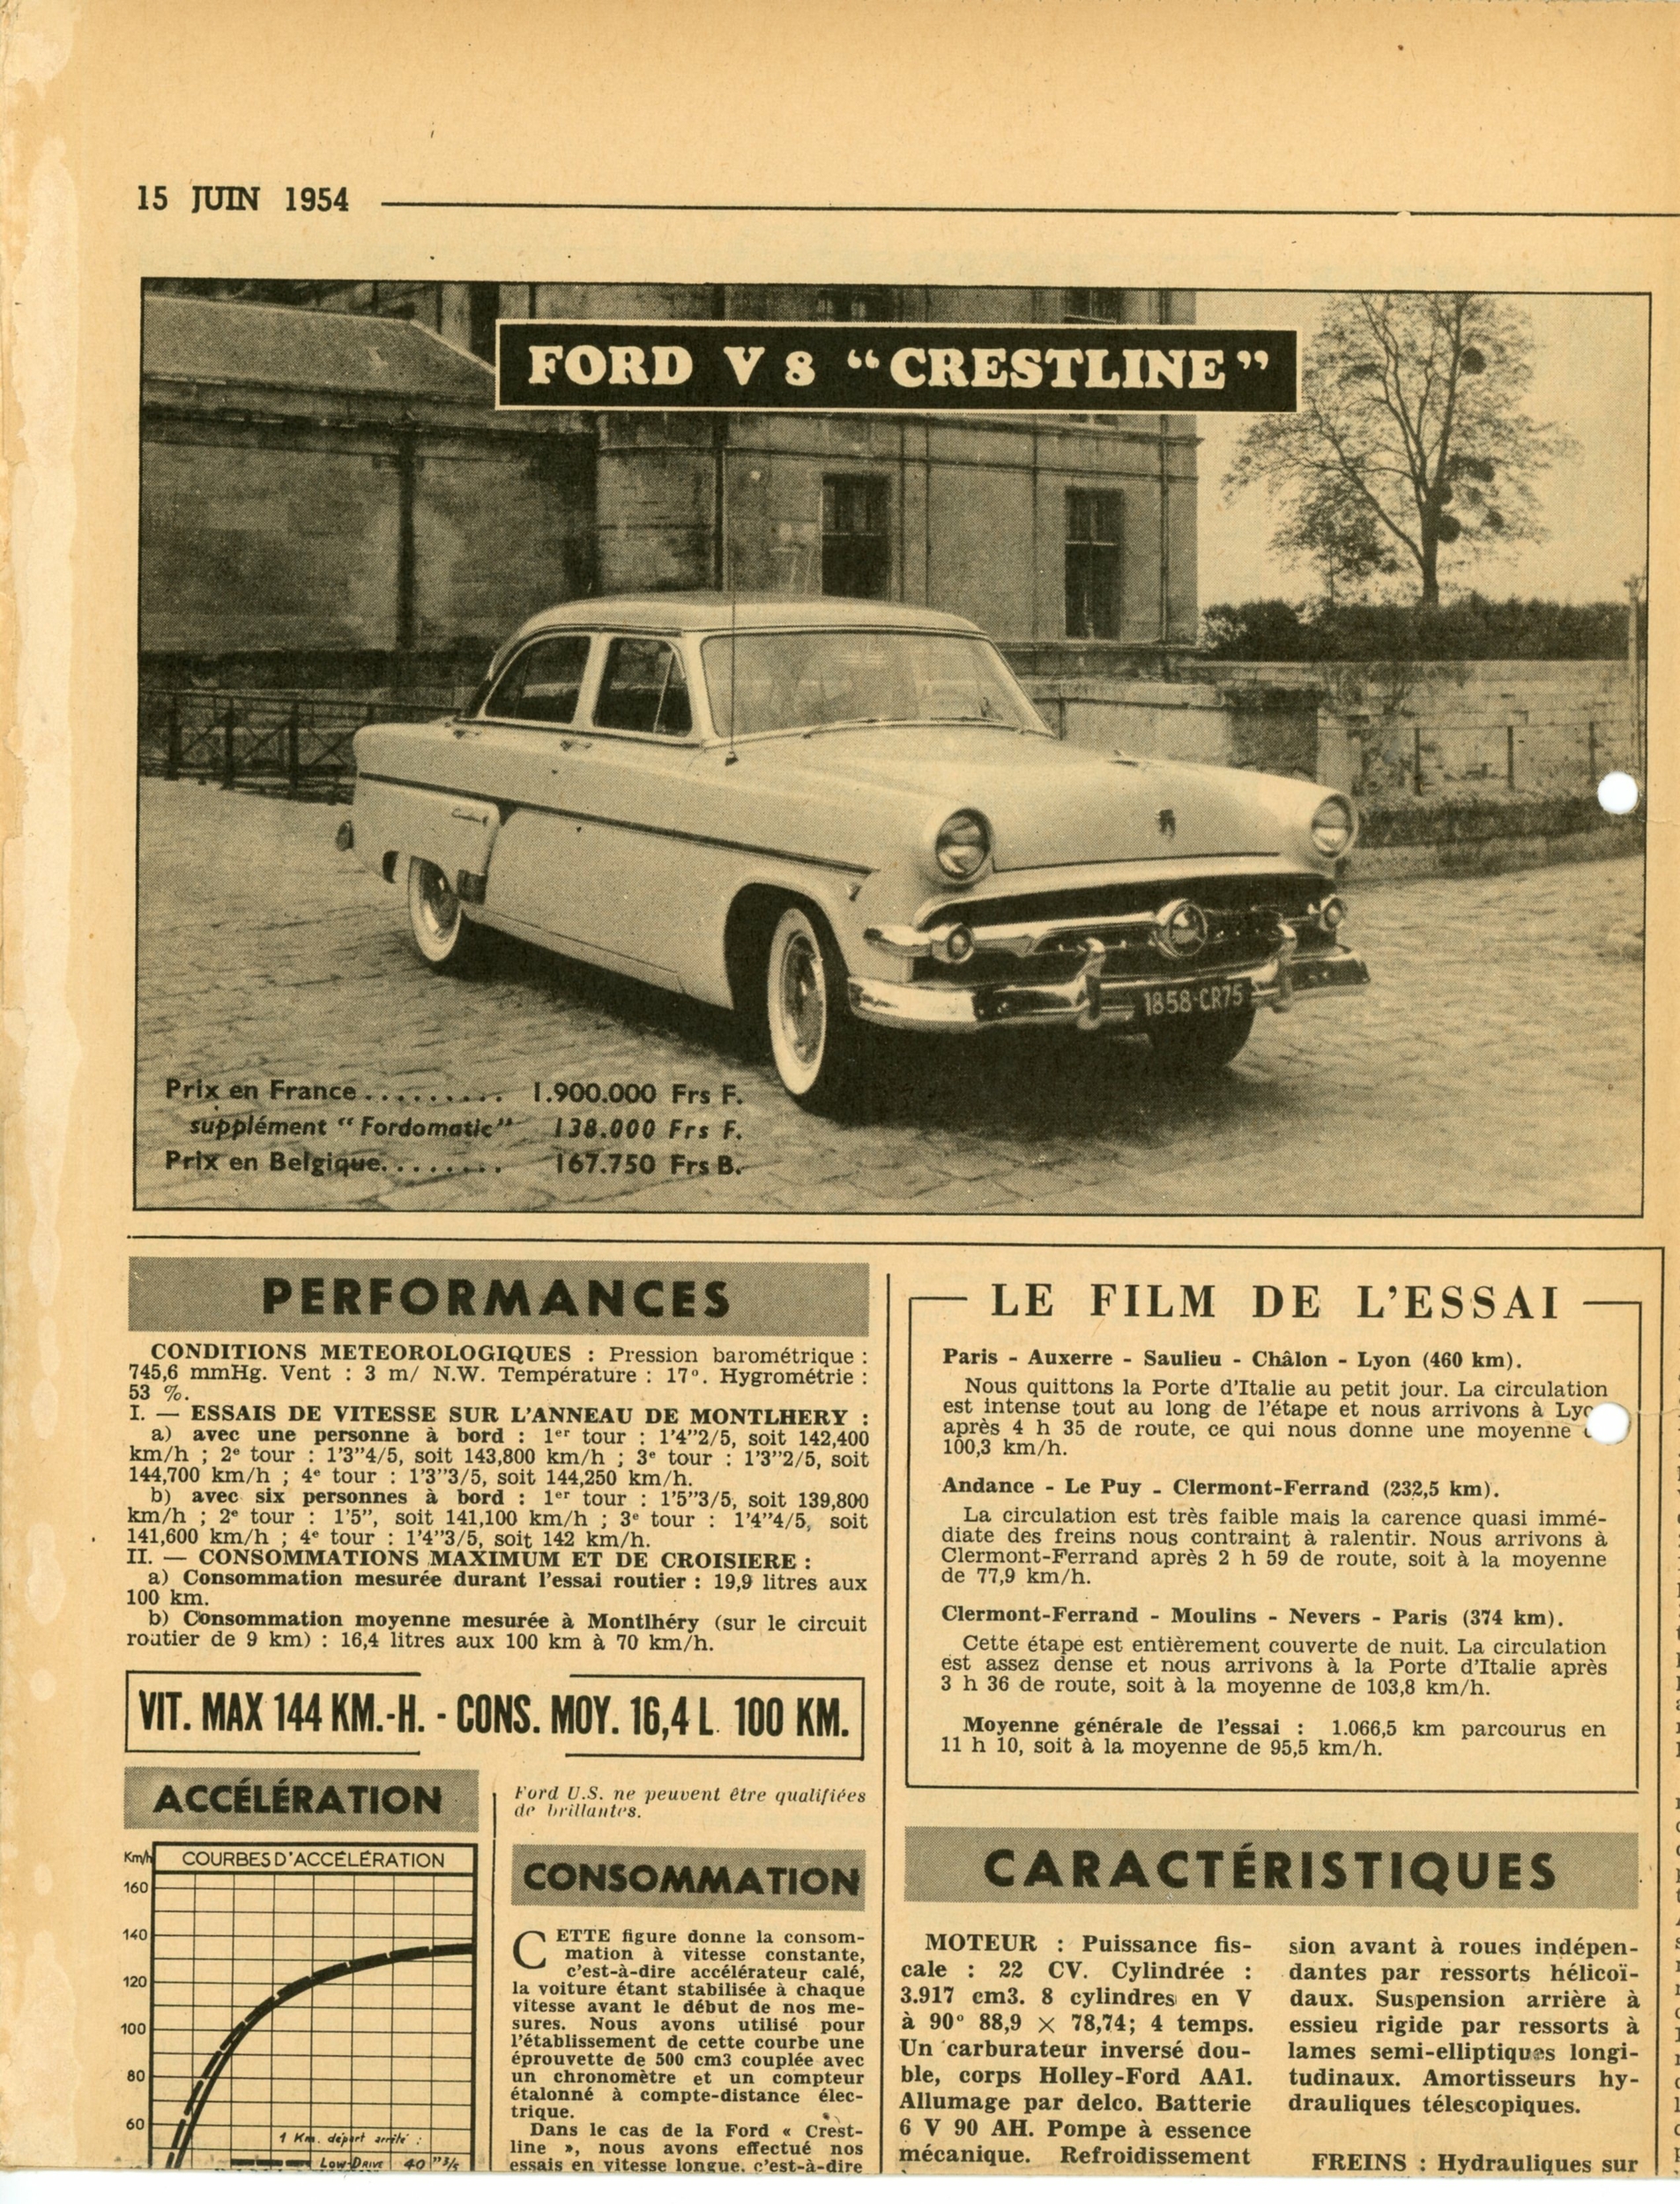 FORD-V8-CRESTLINE-ARTICLE-PRESSE-1954-LEMASTERBROCKERS